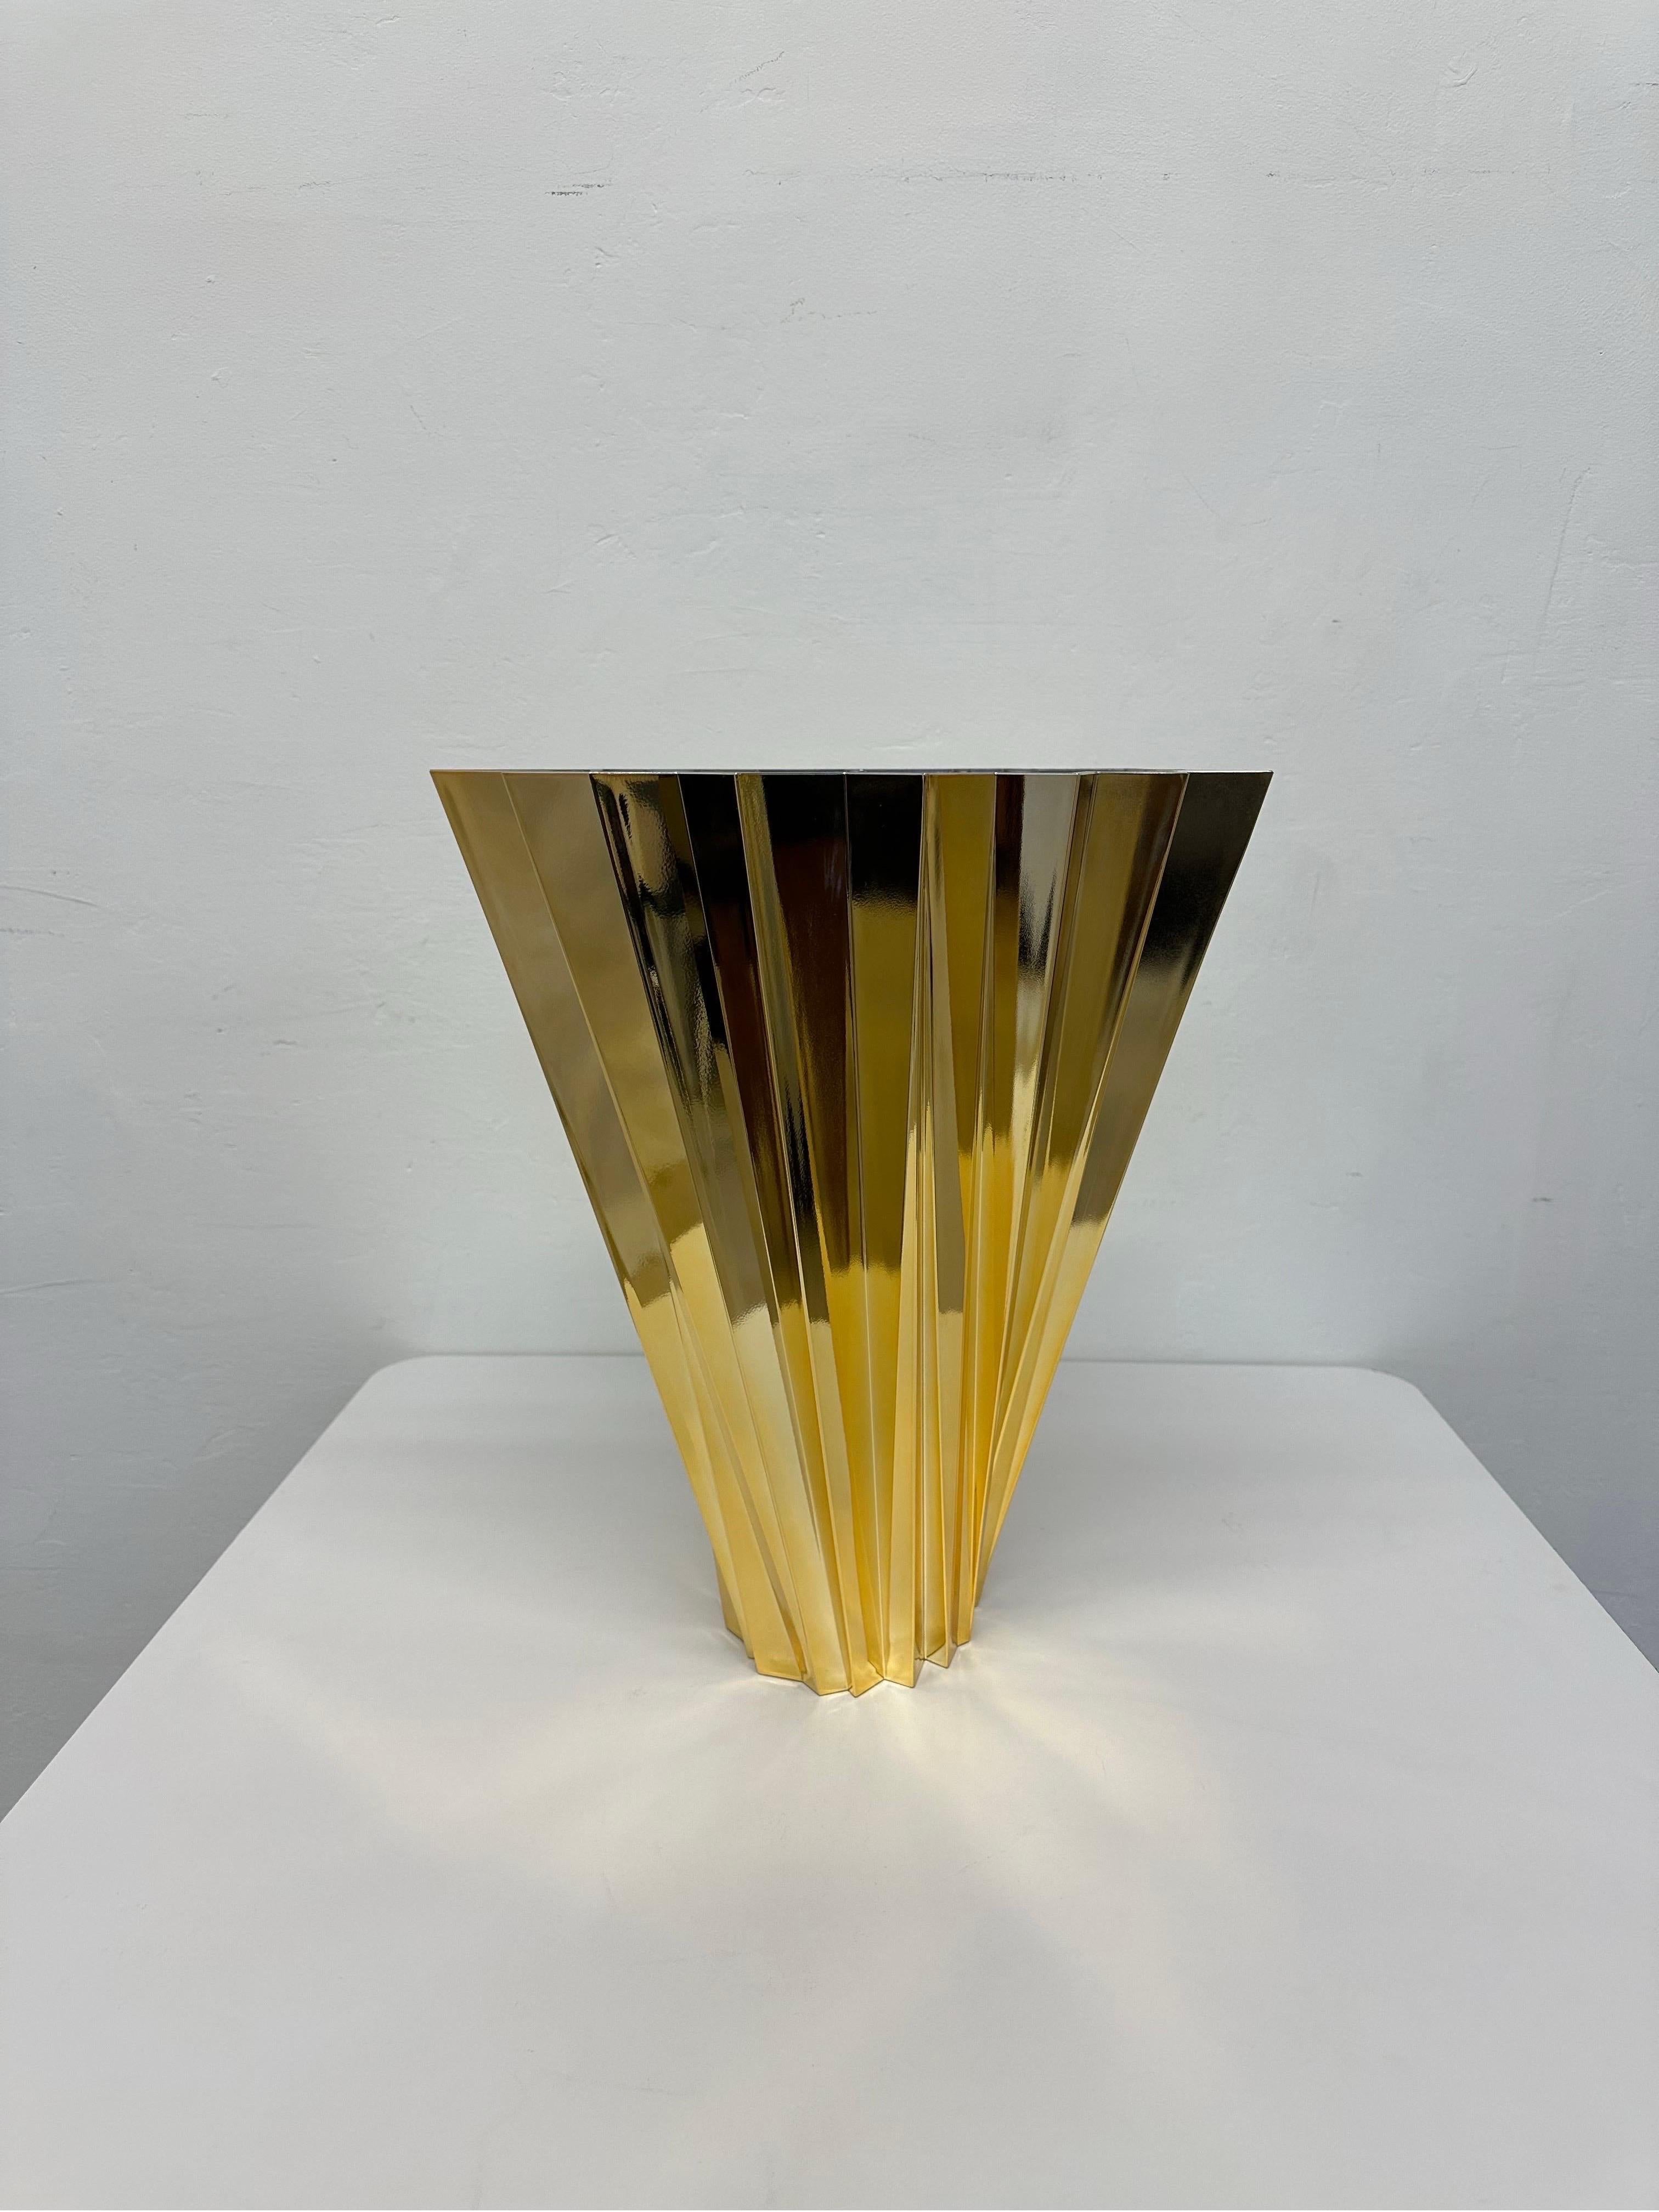 Goldene Shanghai-Vase, entworfen von Mario Bellini für Kartell.

Eine facettenreiche Vase, die sich vom Boden bis zur Spitze in einer wirbelnden Bewegung verbreitert. Shanghai ist wie gebrochenes Licht, das von prismenähnlichen Kristallen ausgeht,